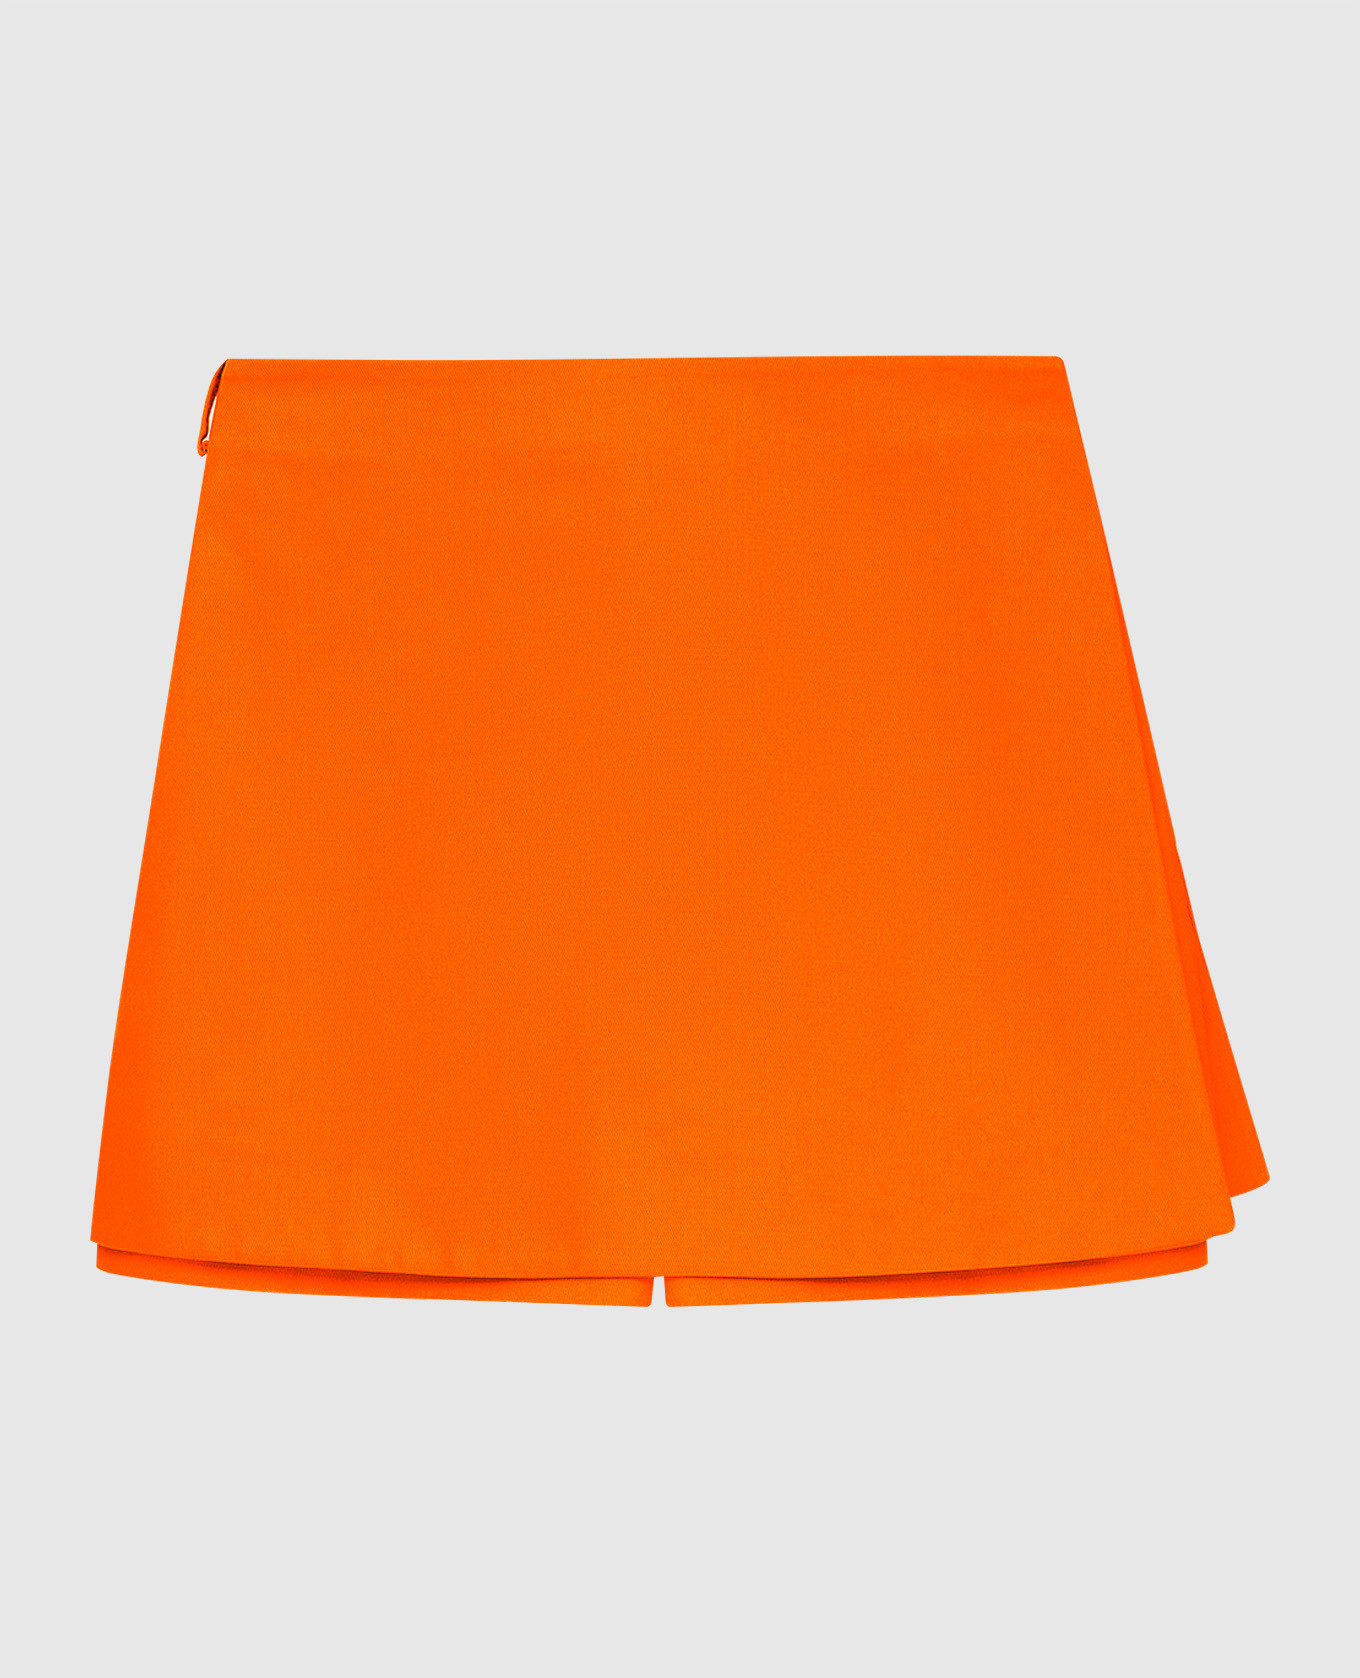 Оранжевая юбка-шорты на запах из шерсти и шелка